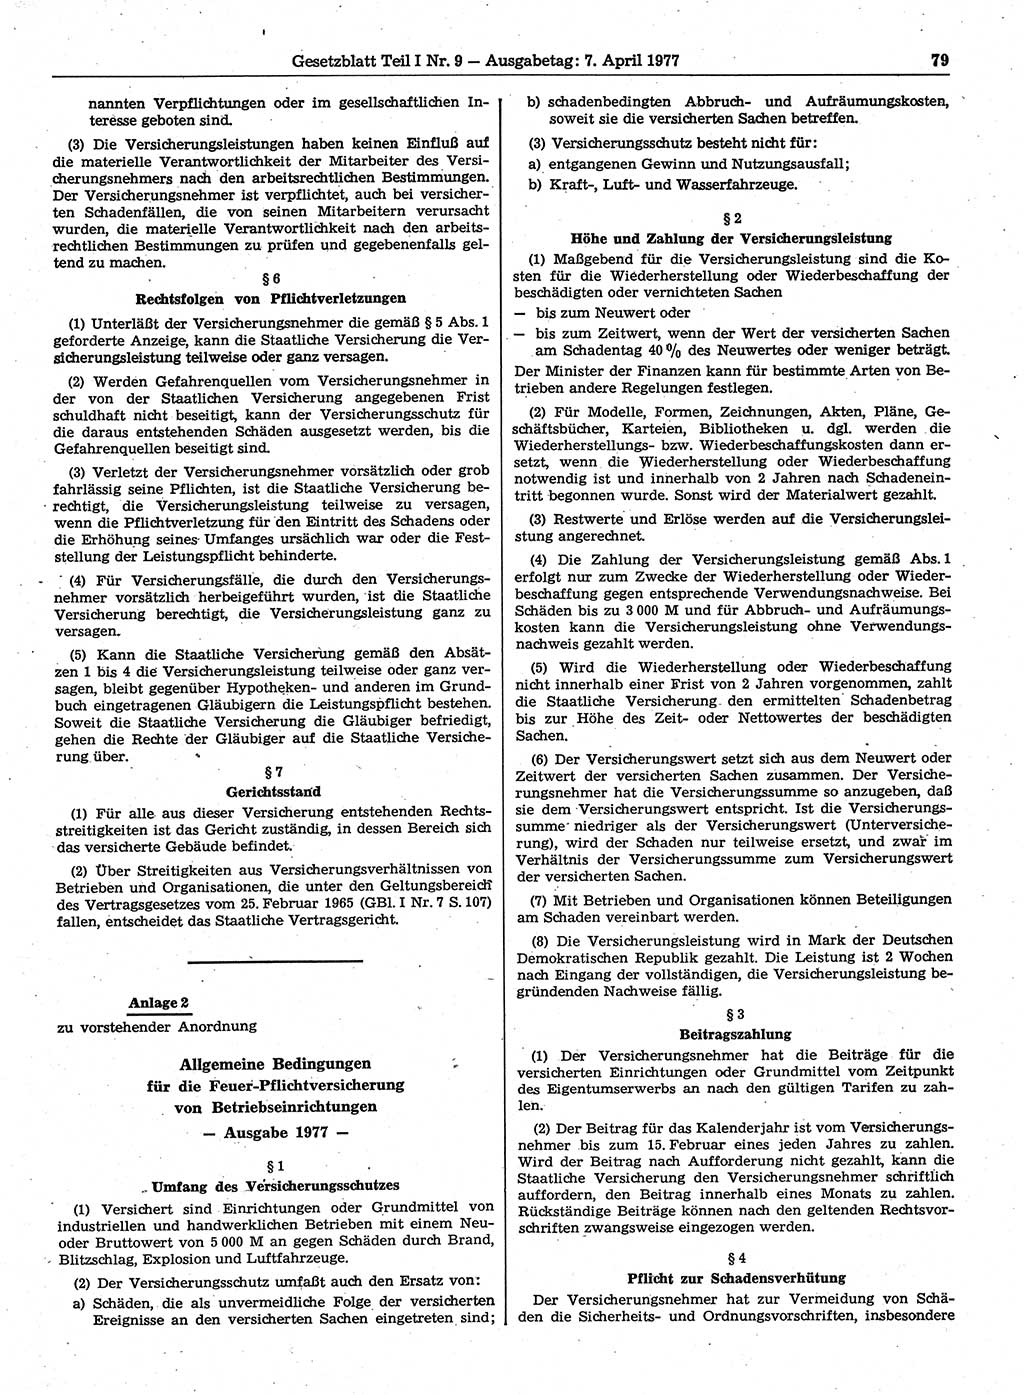 Gesetzblatt (GBl.) der Deutschen Demokratischen Republik (DDR) Teil Ⅰ 1977, Seite 79 (GBl. DDR Ⅰ 1977, S. 79)